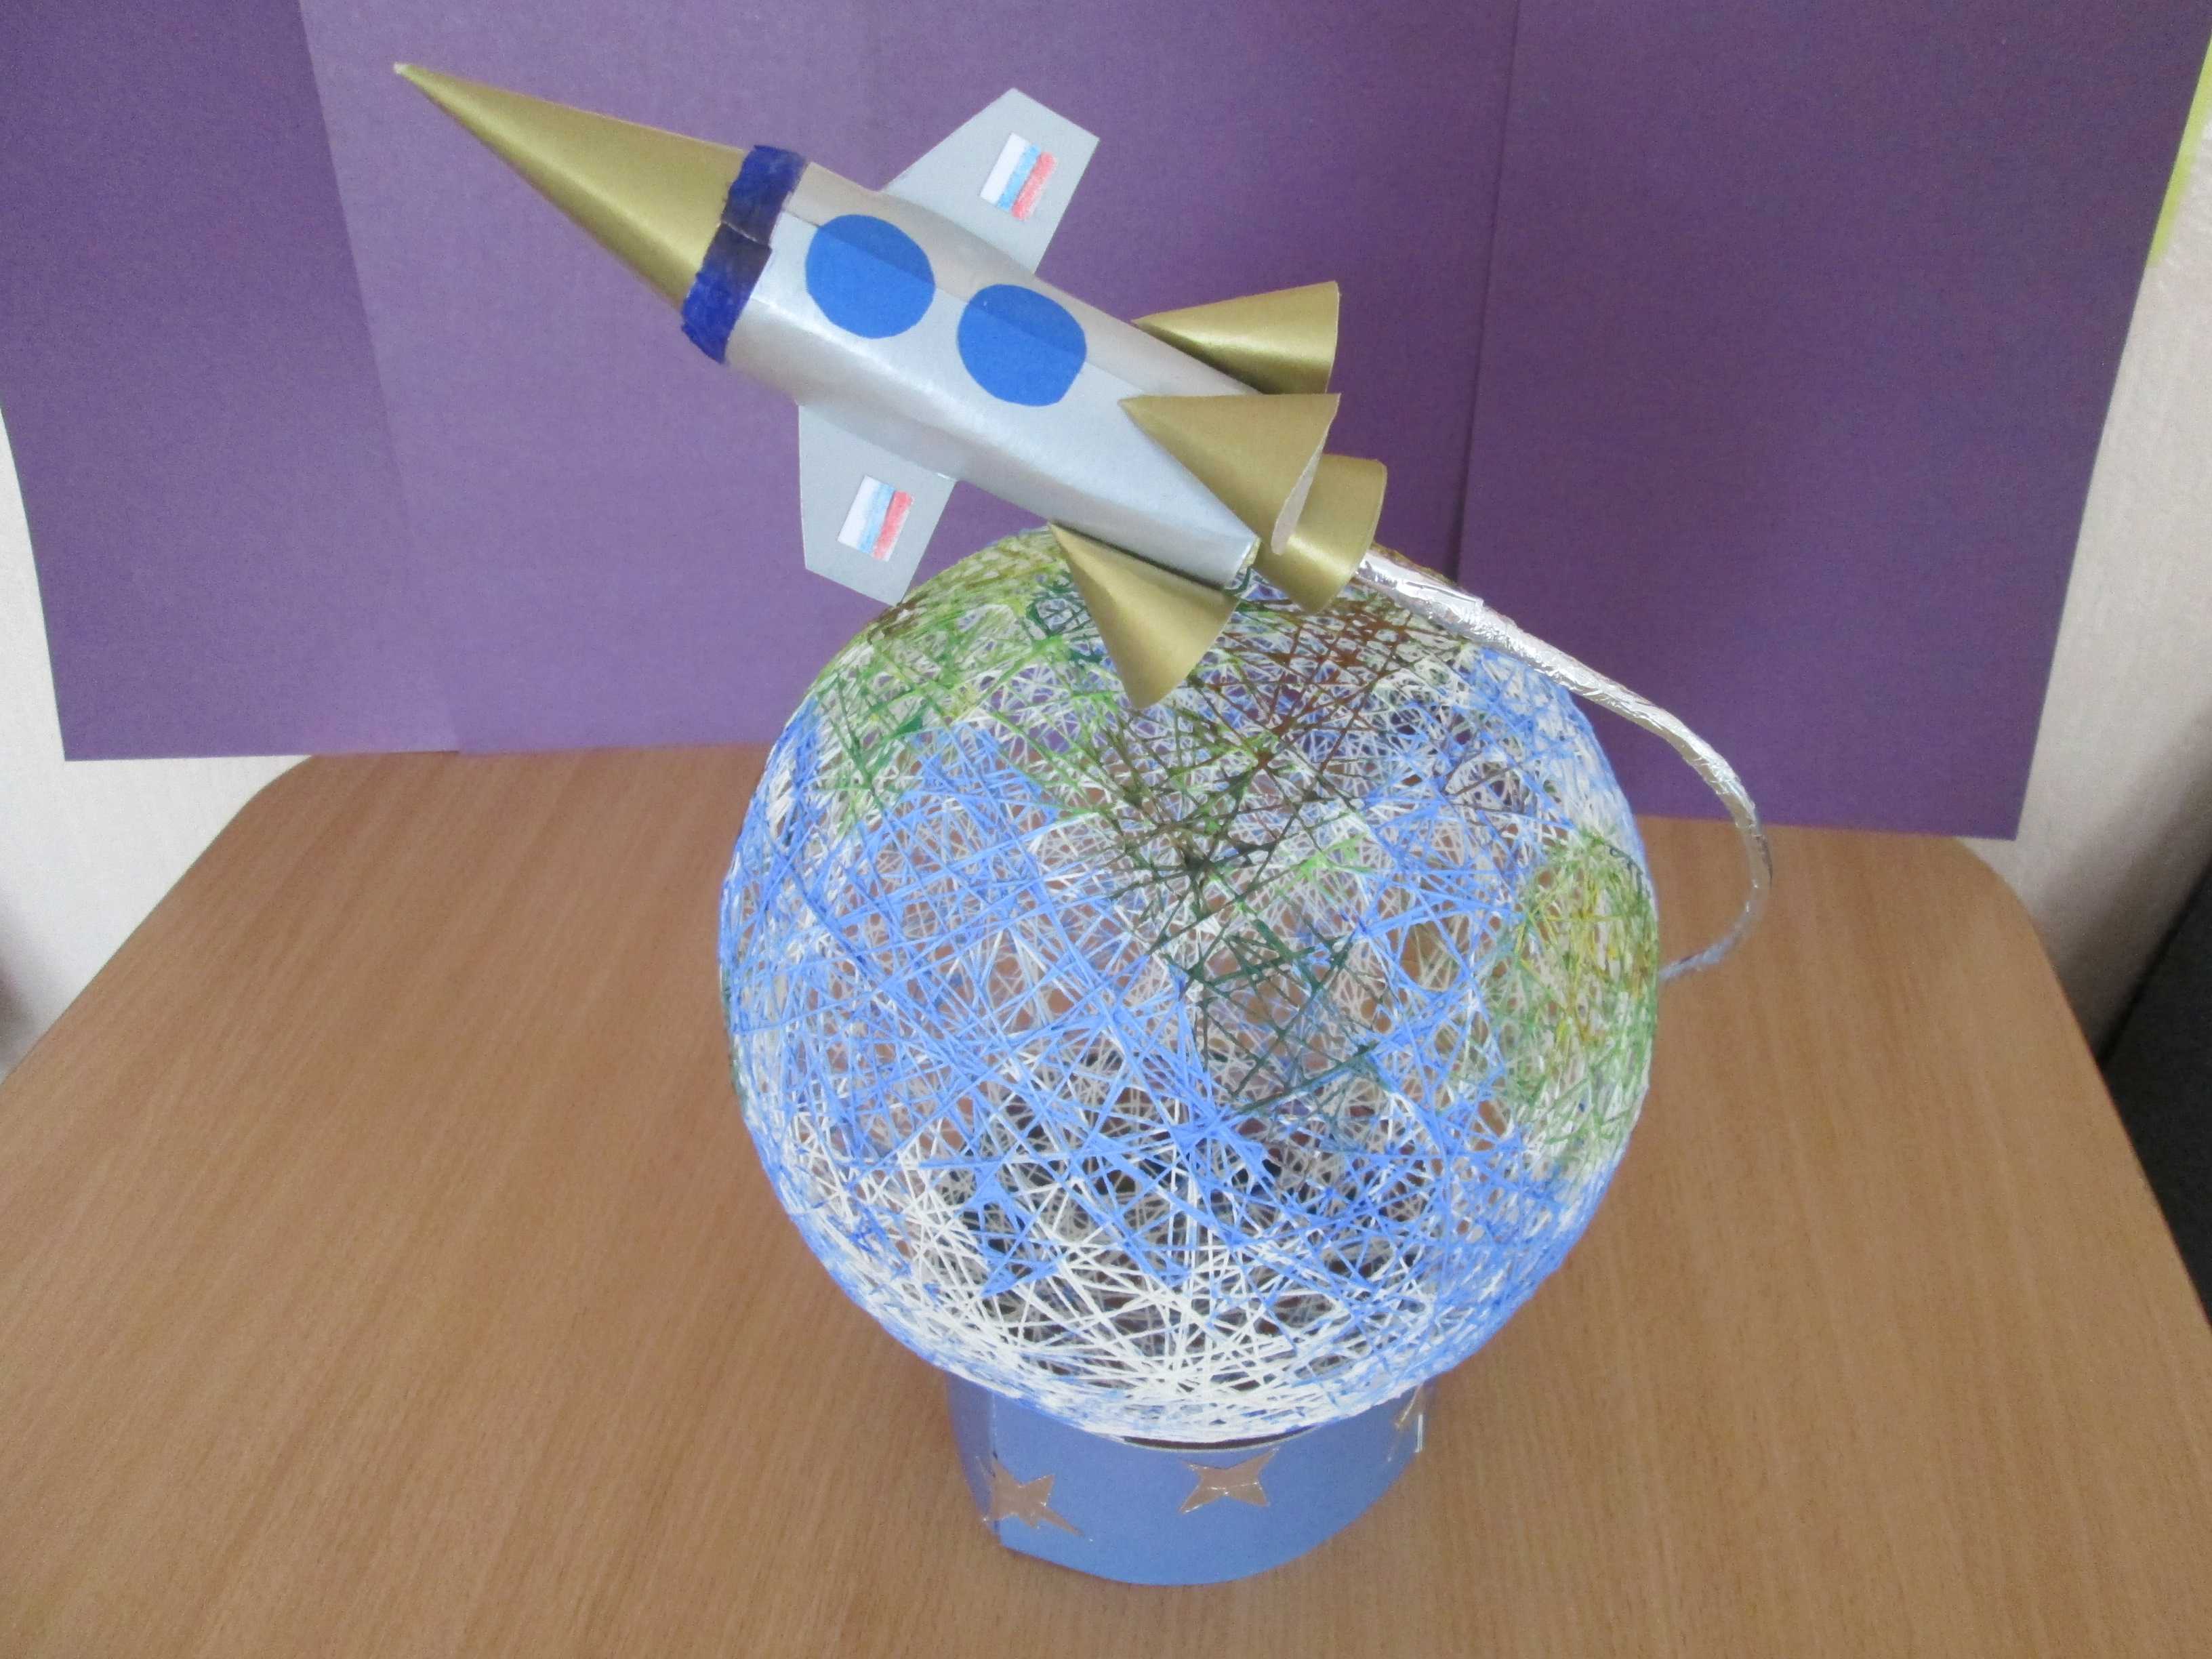 Ракета из бумаги (оригами) — 2 варианта